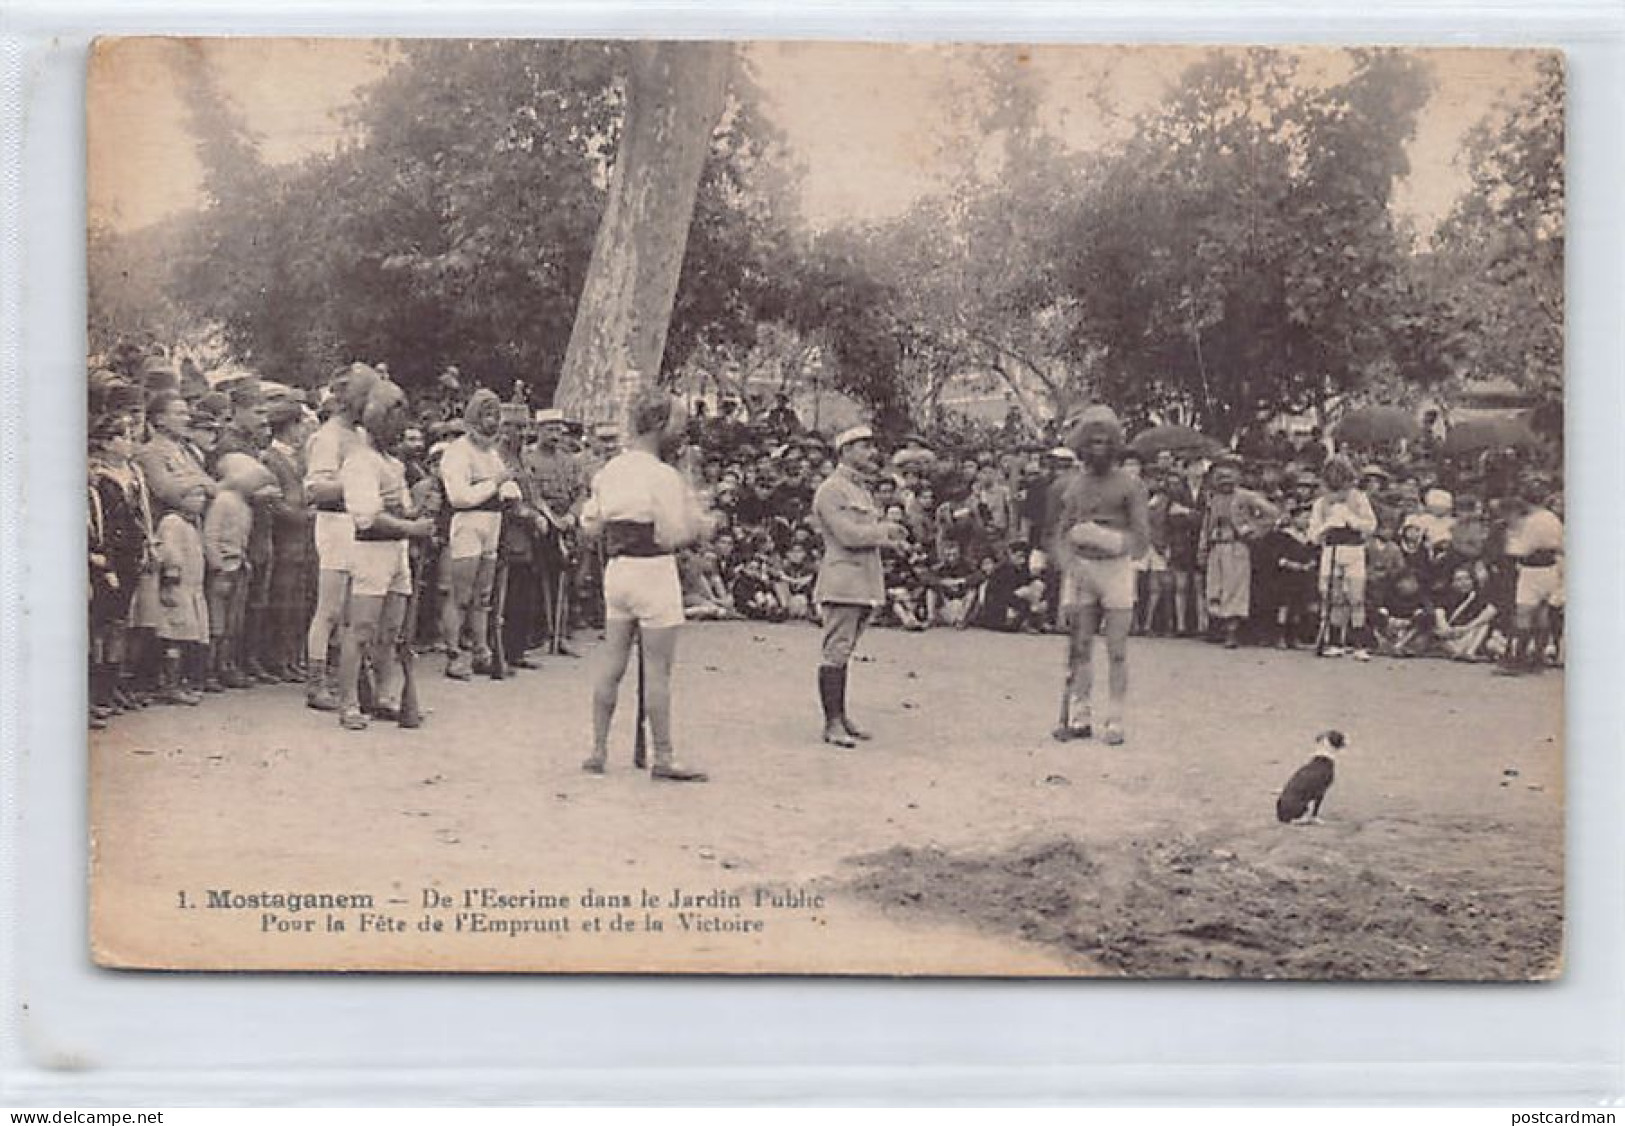 MOSTAGADEM - De L'escrime Dans Le Jardin Public - Pour La Fête De L'Emprunt De La Victoire (Première Guerre Mondiale) -  - Mostaganem